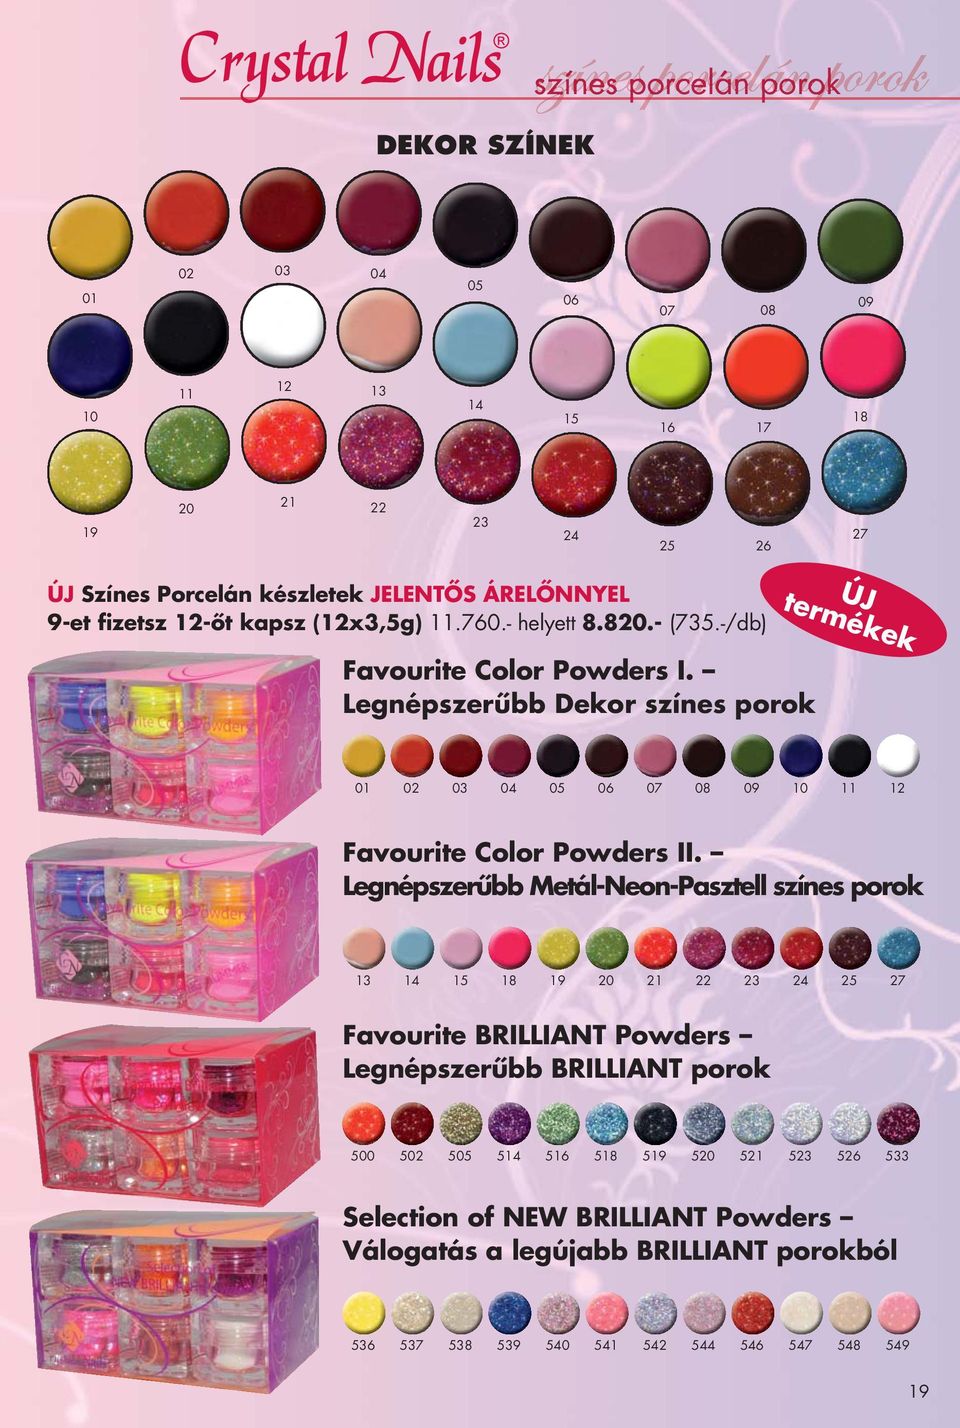 Legnépszerűbb Dekor színes porok ÚJ termékek 01 02 03 04 05 06 07 08 09 10 11 12 Favourite Color Powders II.